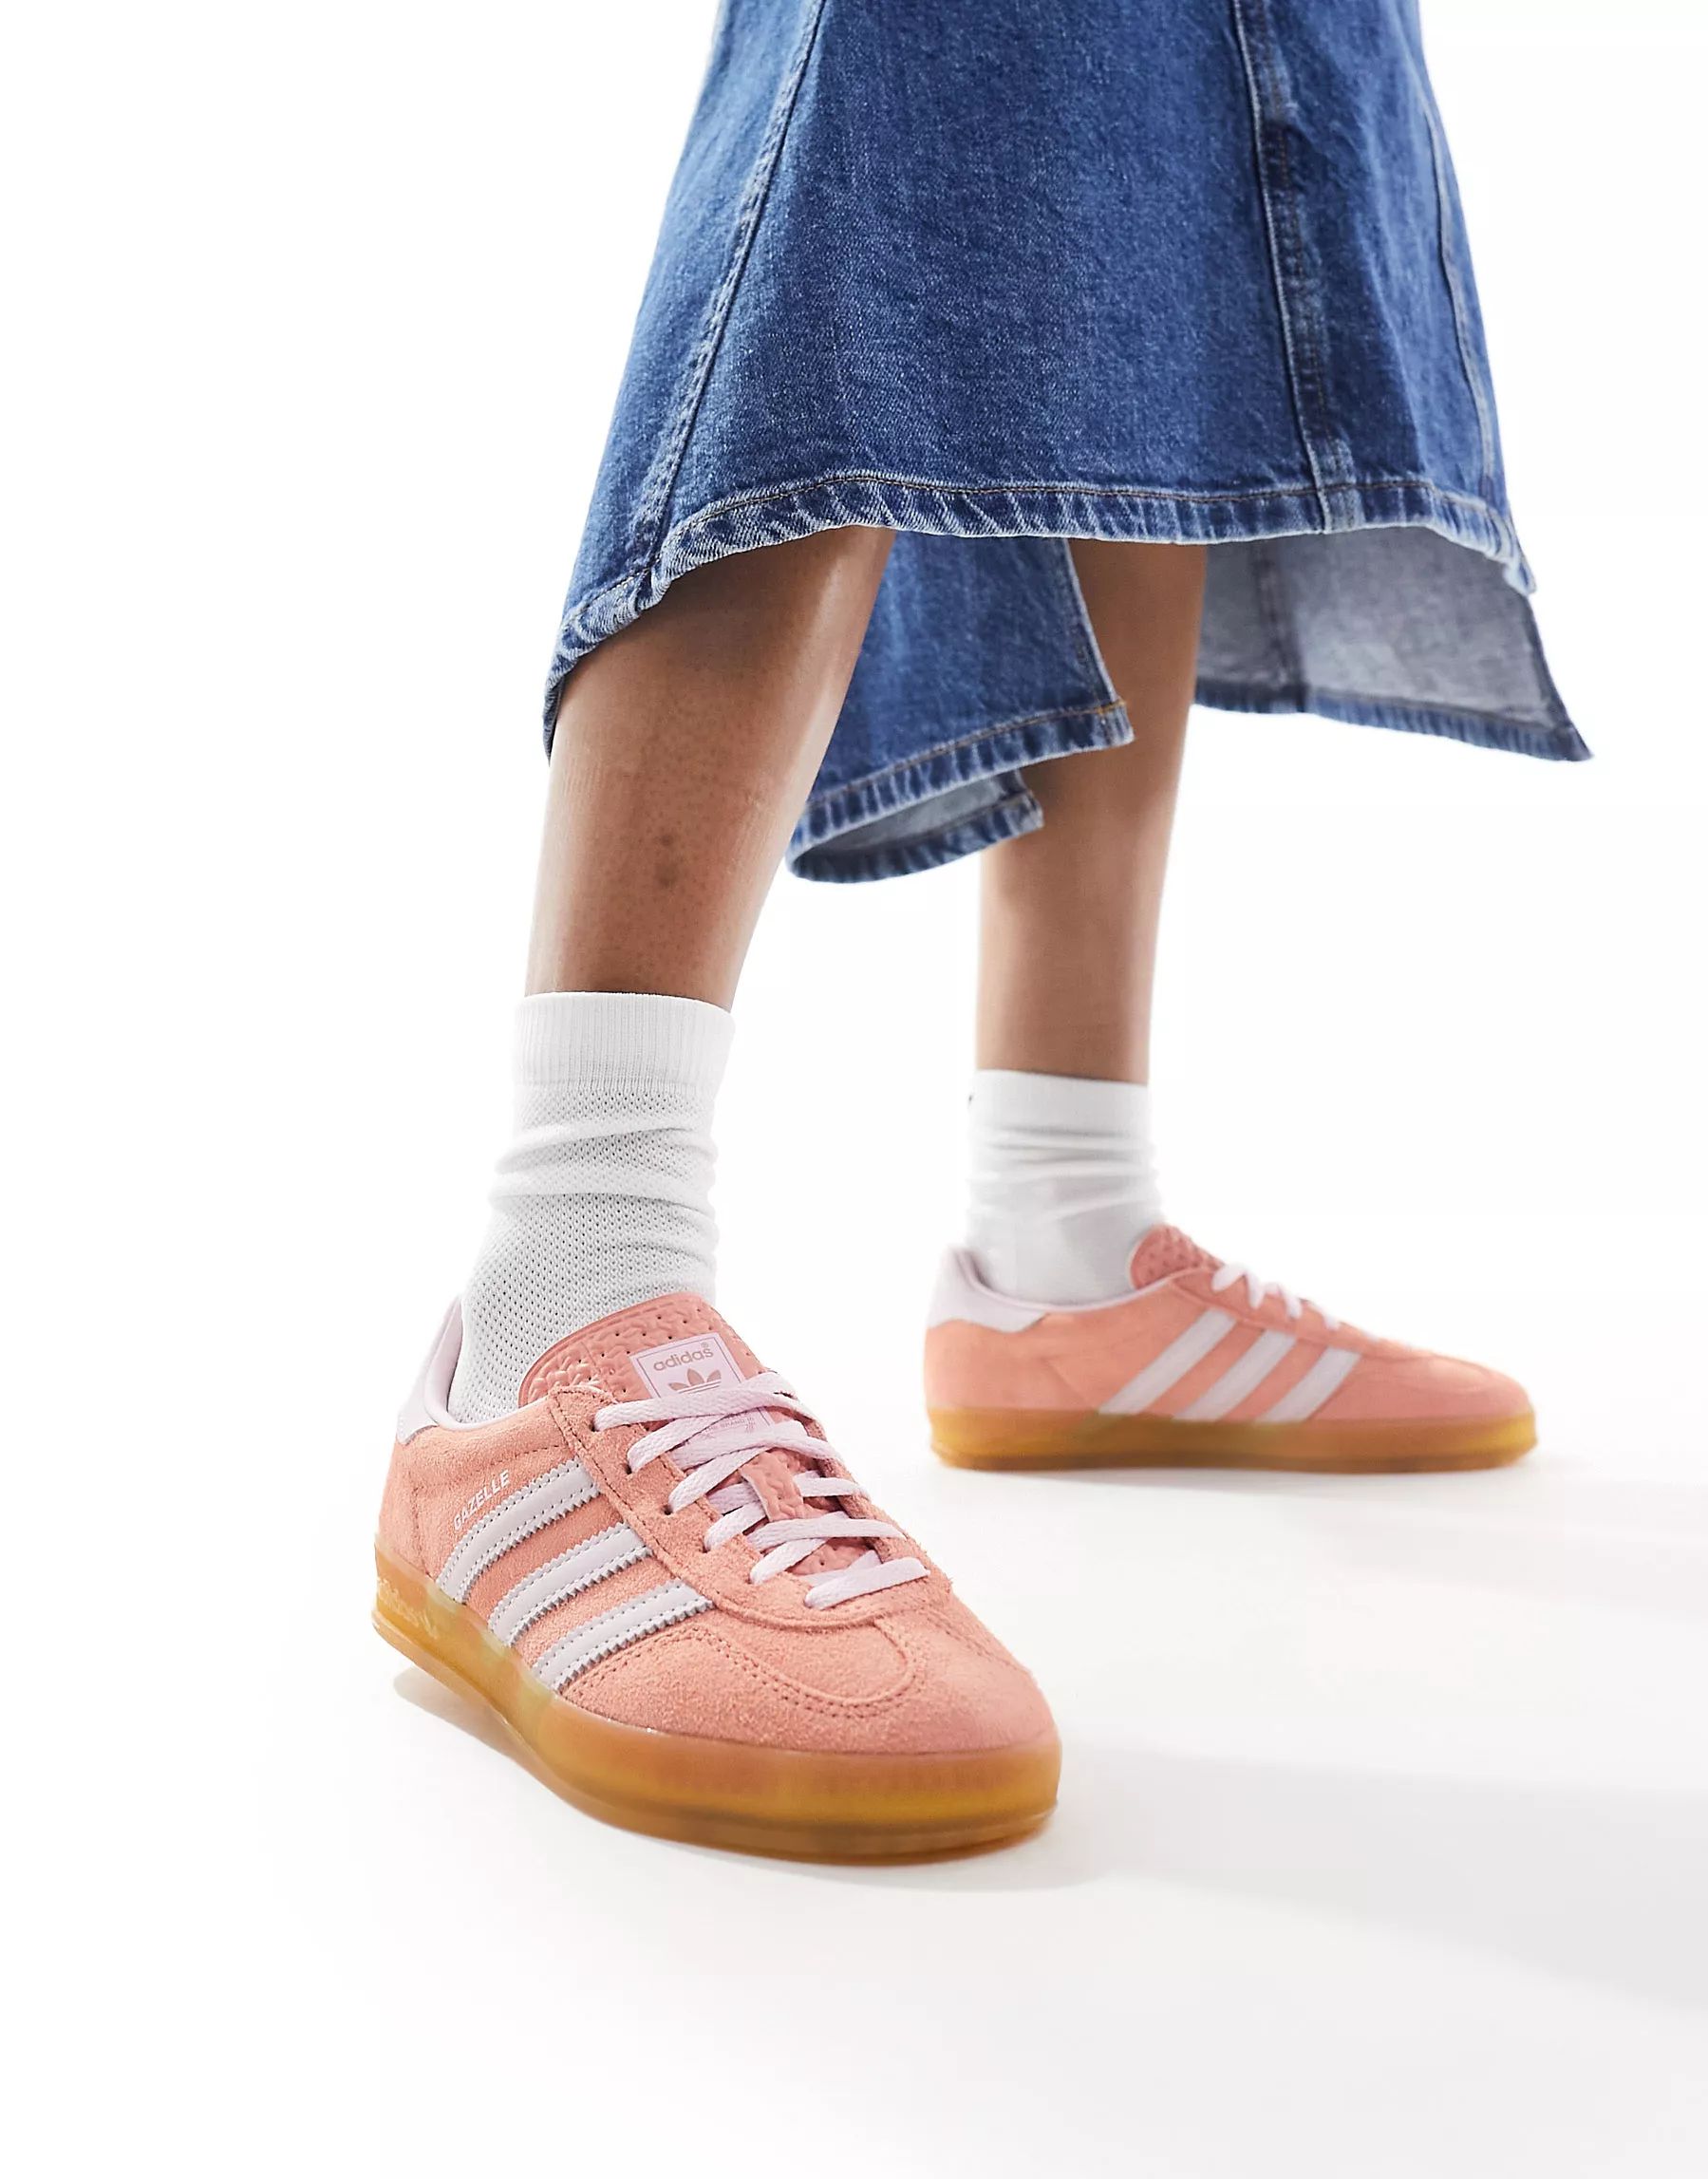 adidas Originals Gazelle Indoor trainers in soft pink | ASOS (Global)